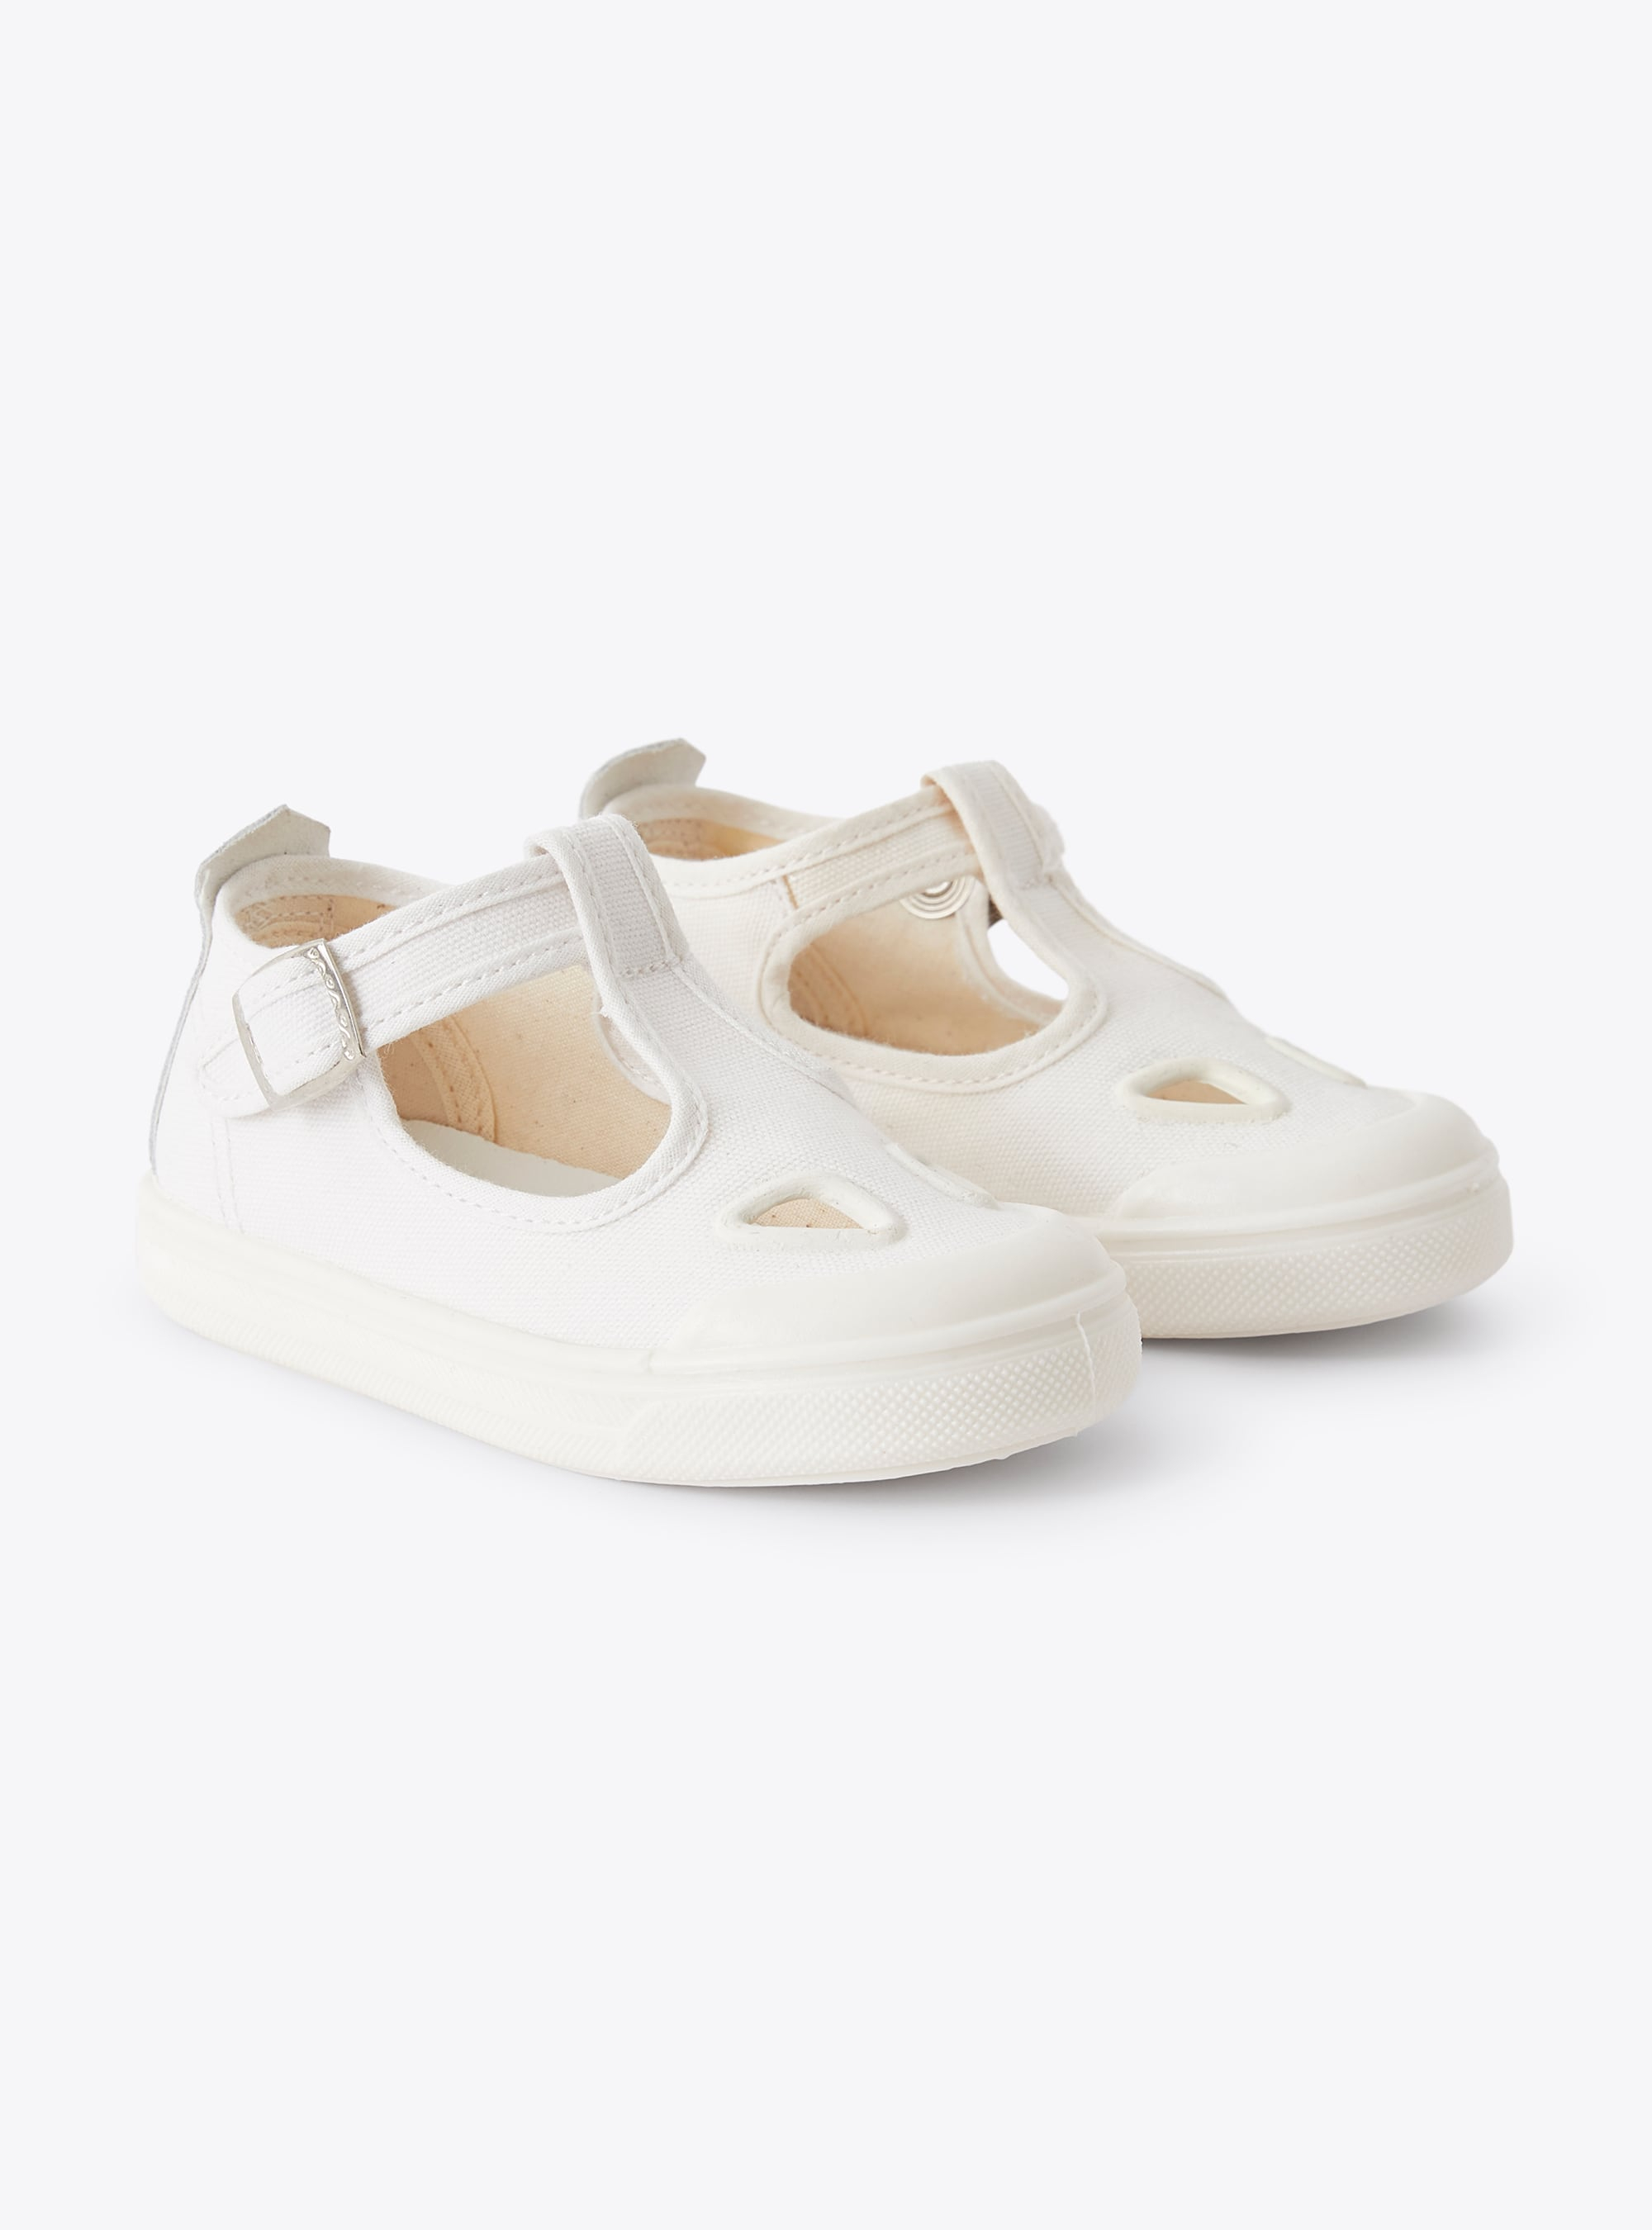 Sandaletten aus weißem Segeltuch mit Ösen - Schuhe - Il Gufo